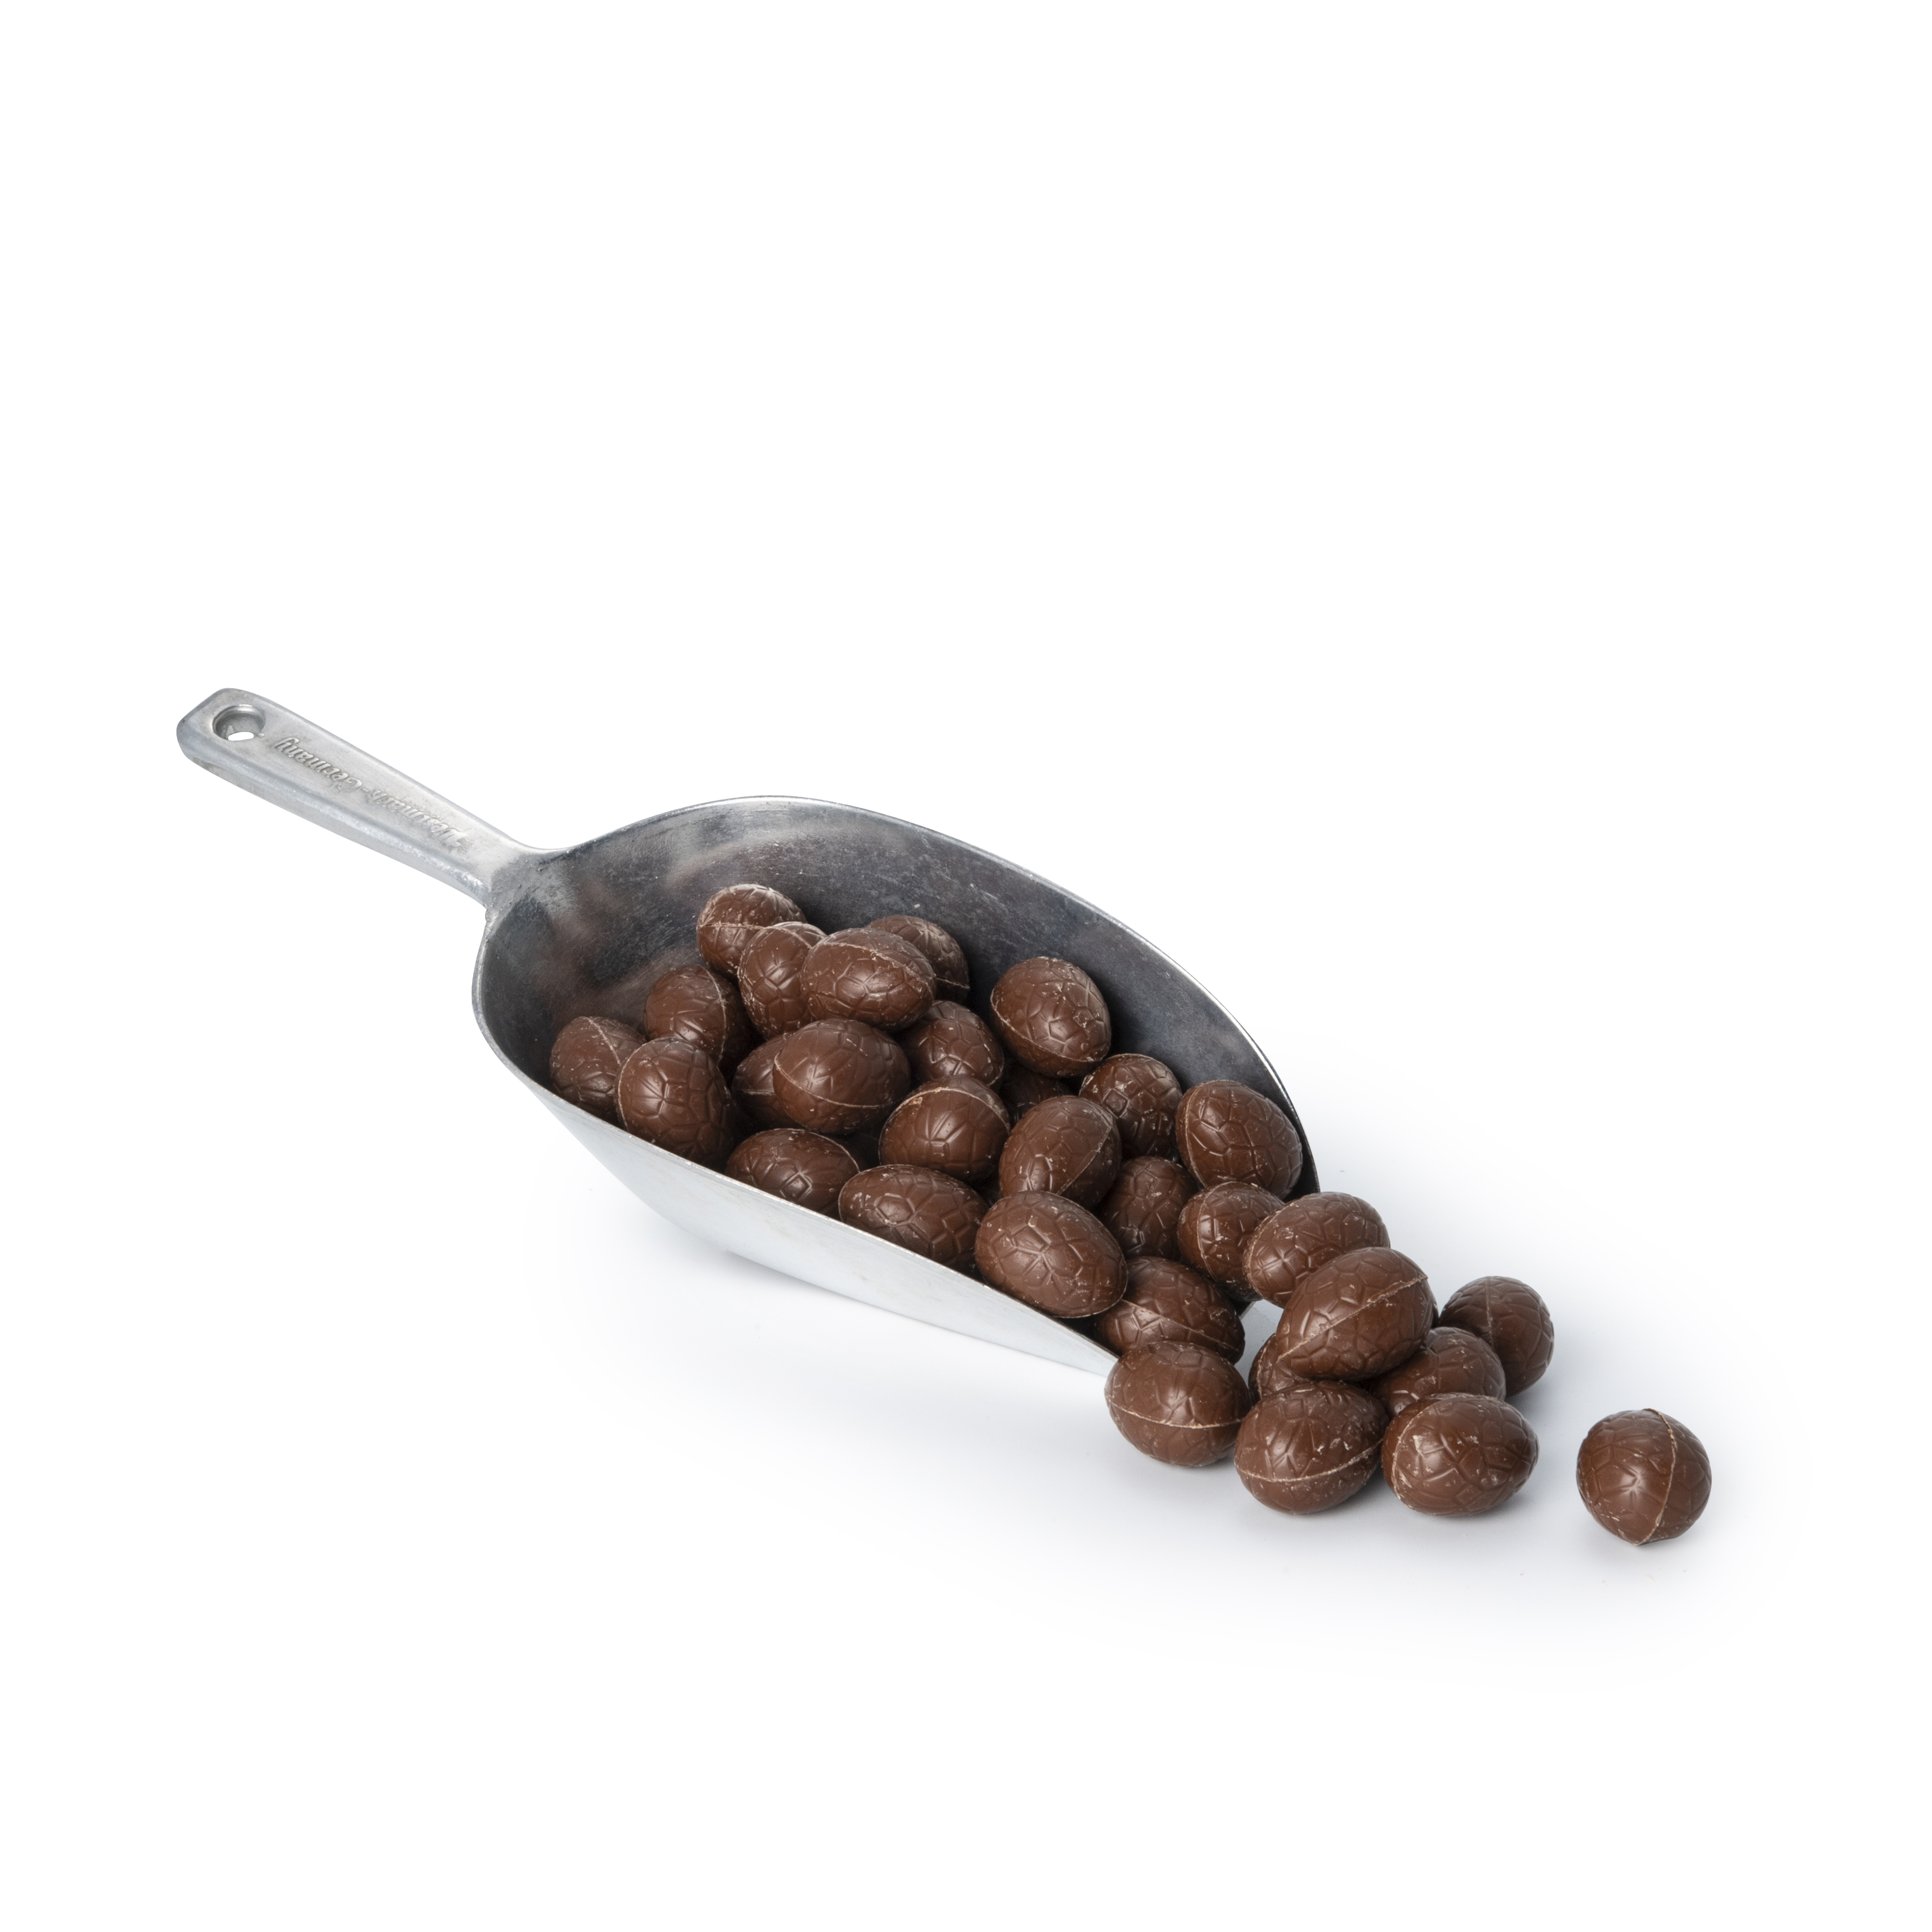 Nao Paaseitjes melkchocolade bulk bio 2.5kg - 2935 -  Beschikbaar van Januari tem april